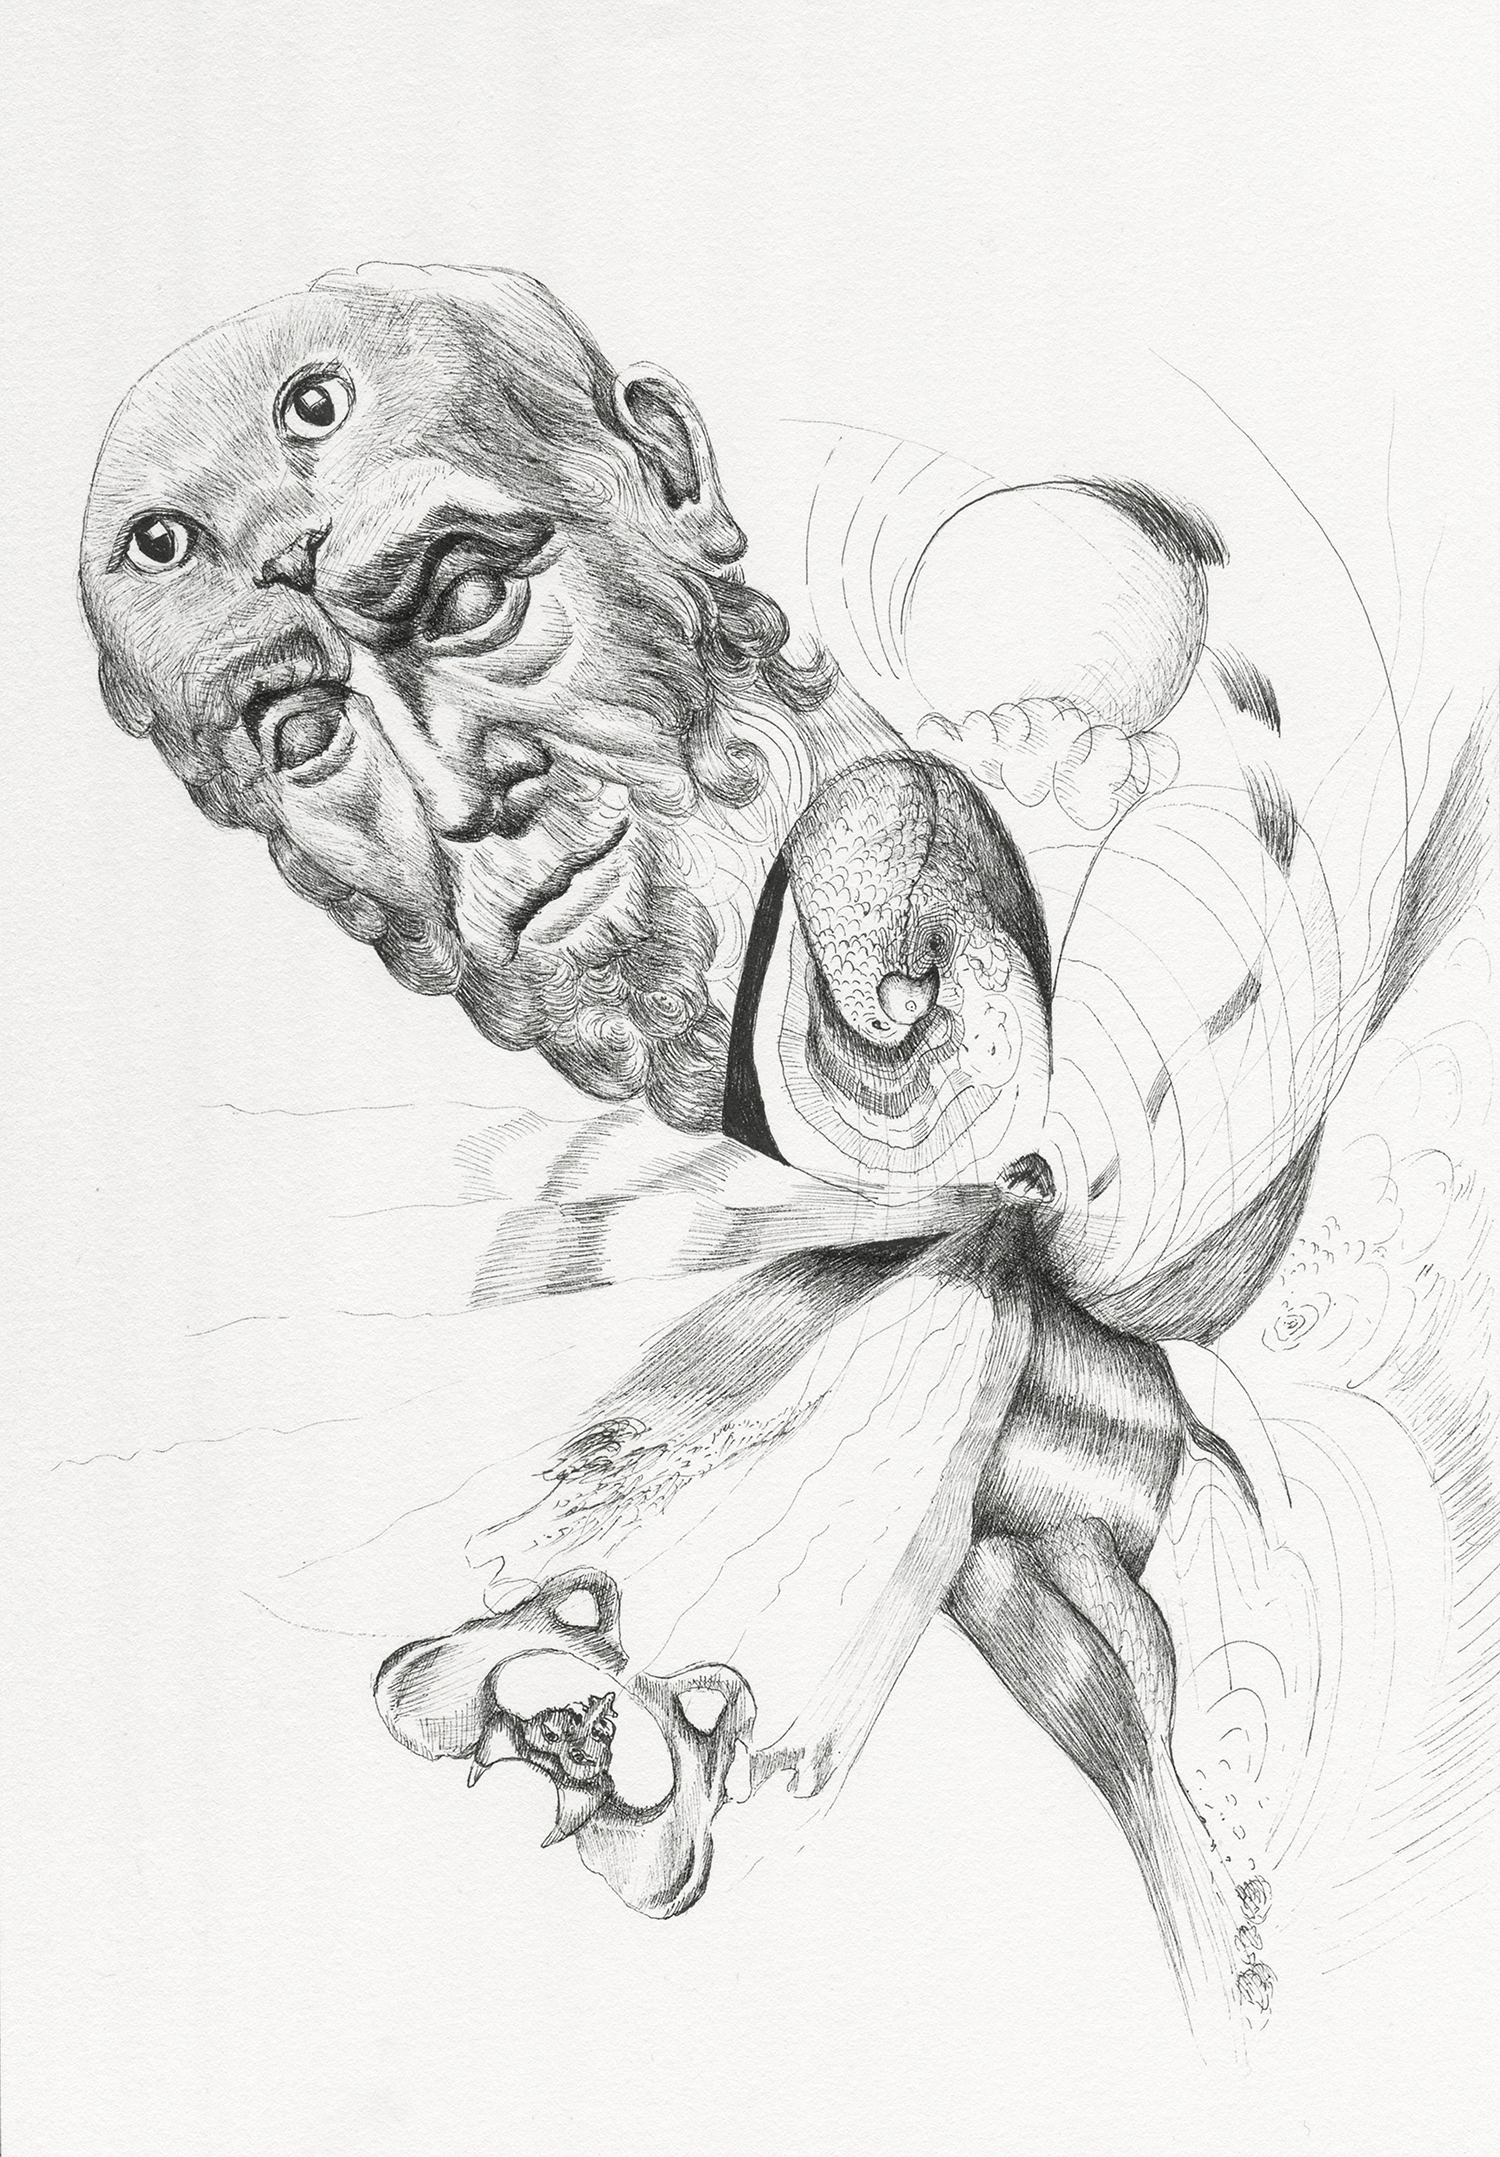  "Hippocrates' Nine Lives" Ink on paper, 7x10", 2017. 